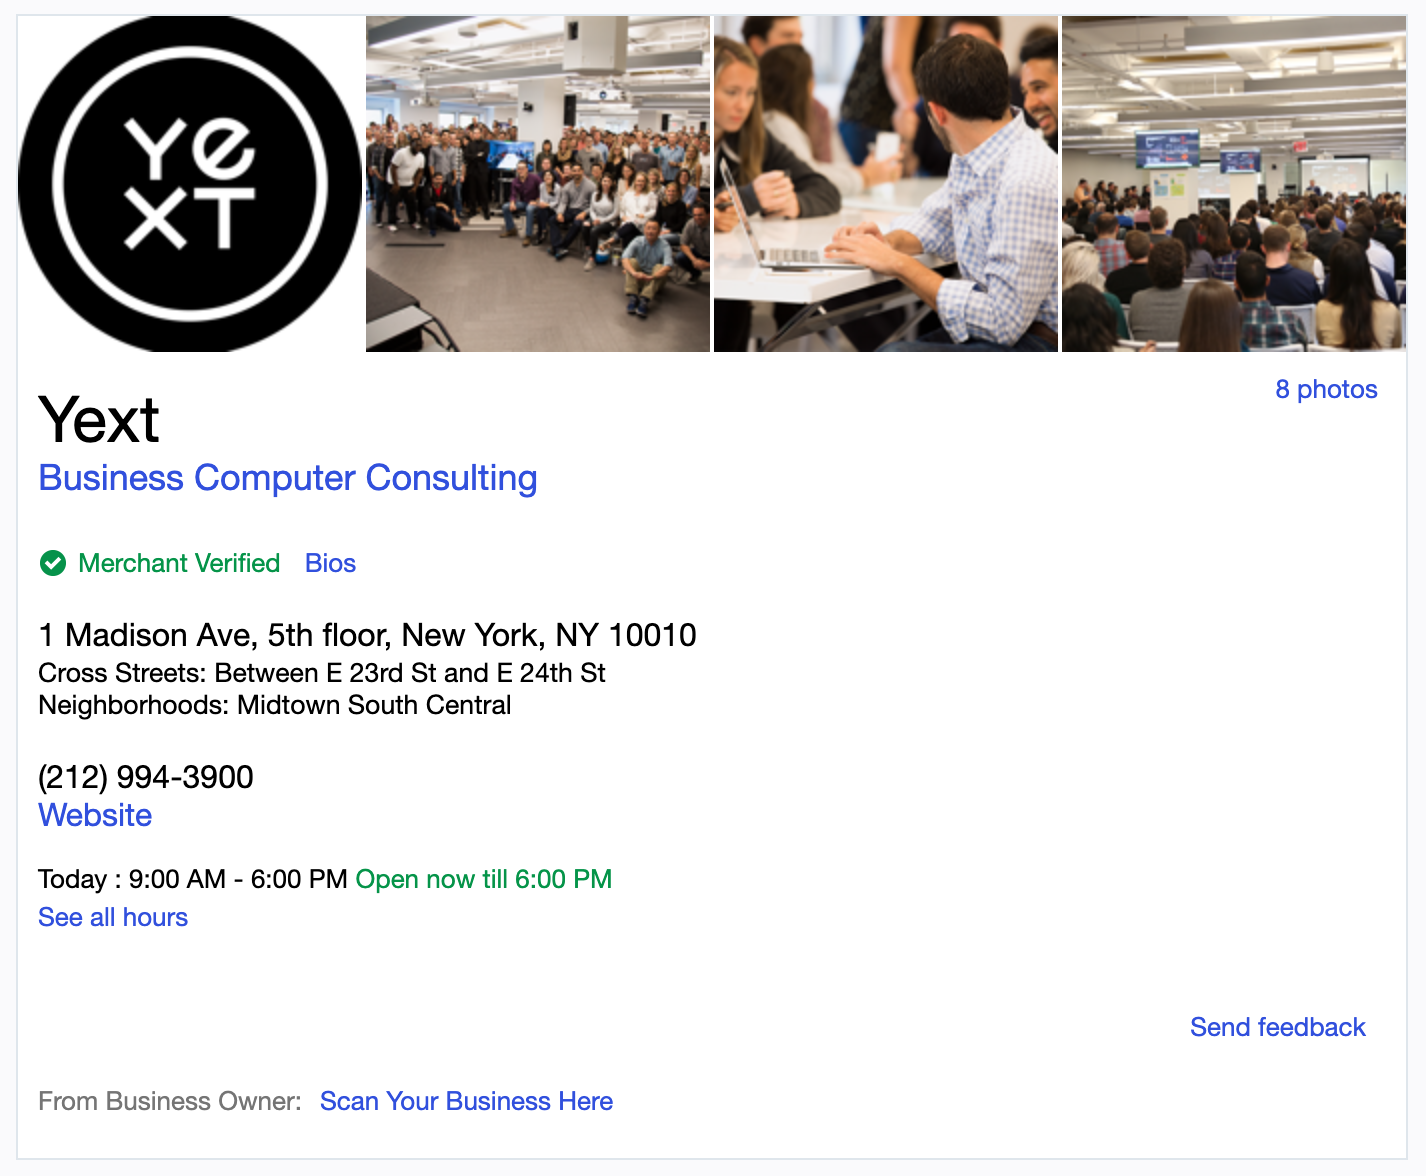 Yext listing on Yahoo